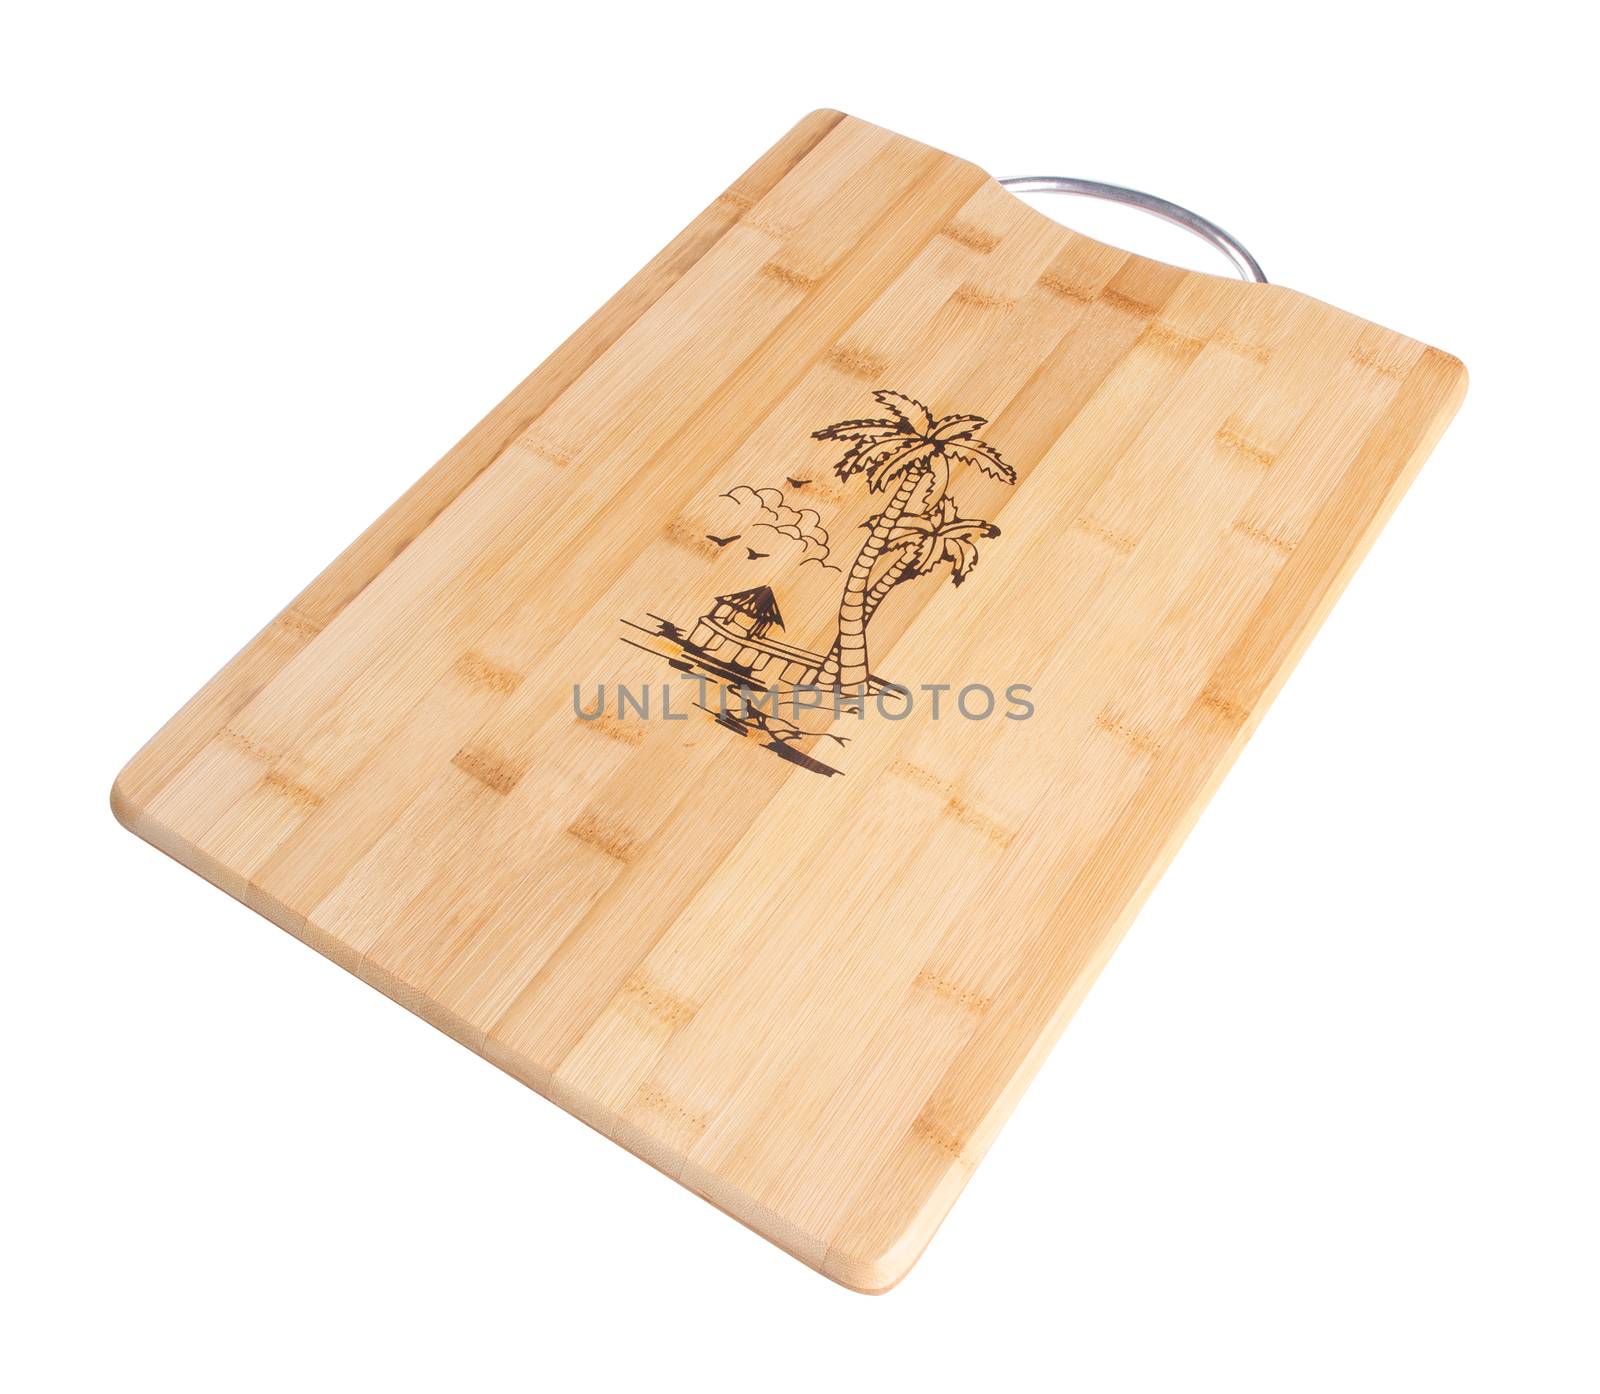 wood cutting board. wood cutting board on a background